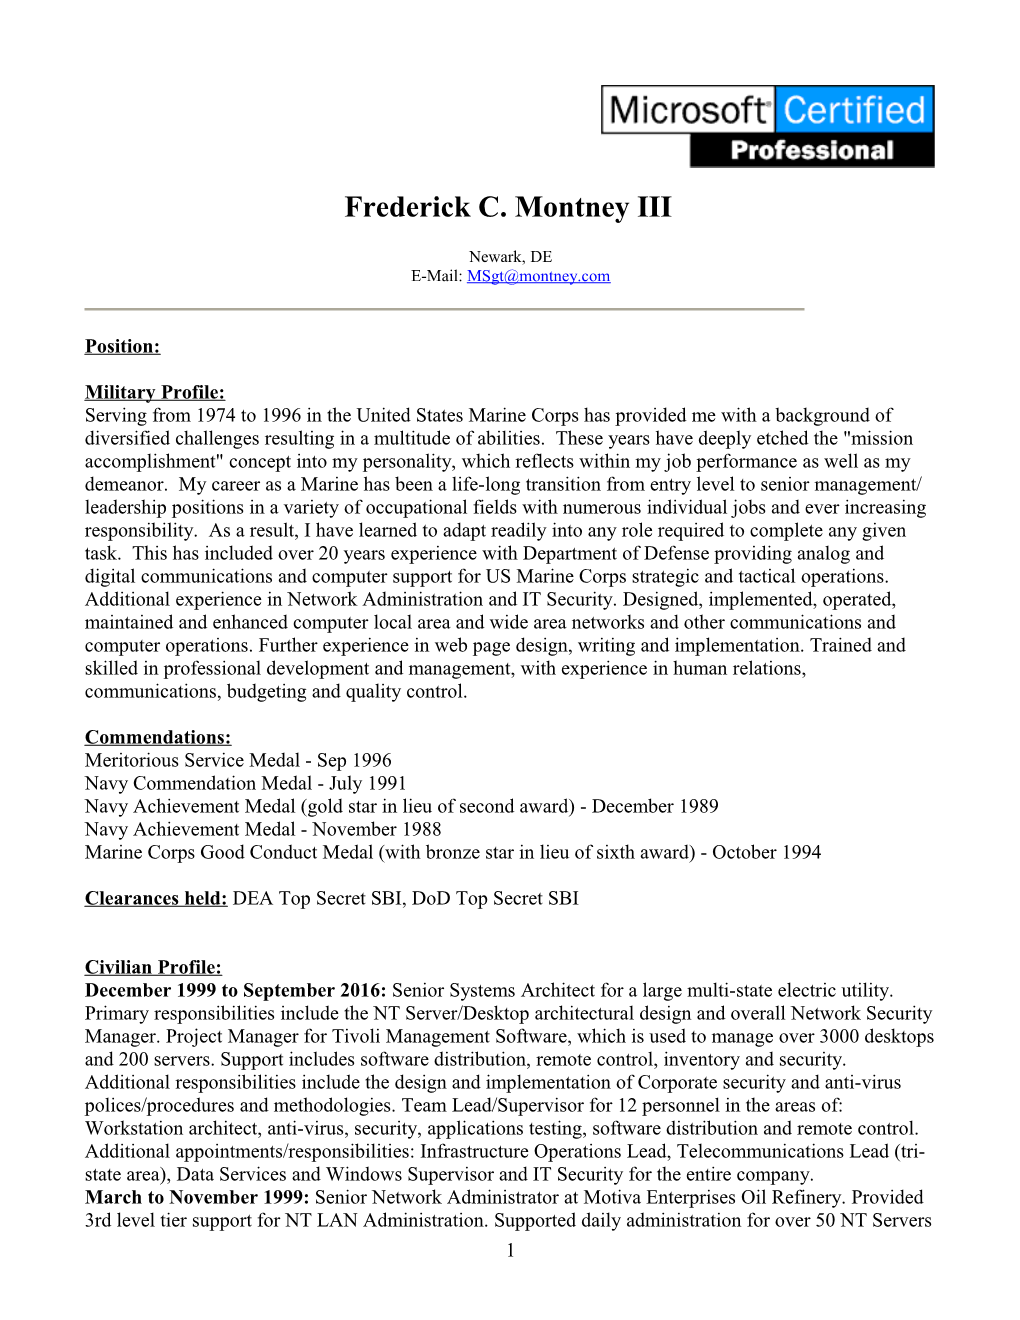 Resume Of Frederick C. Montney III